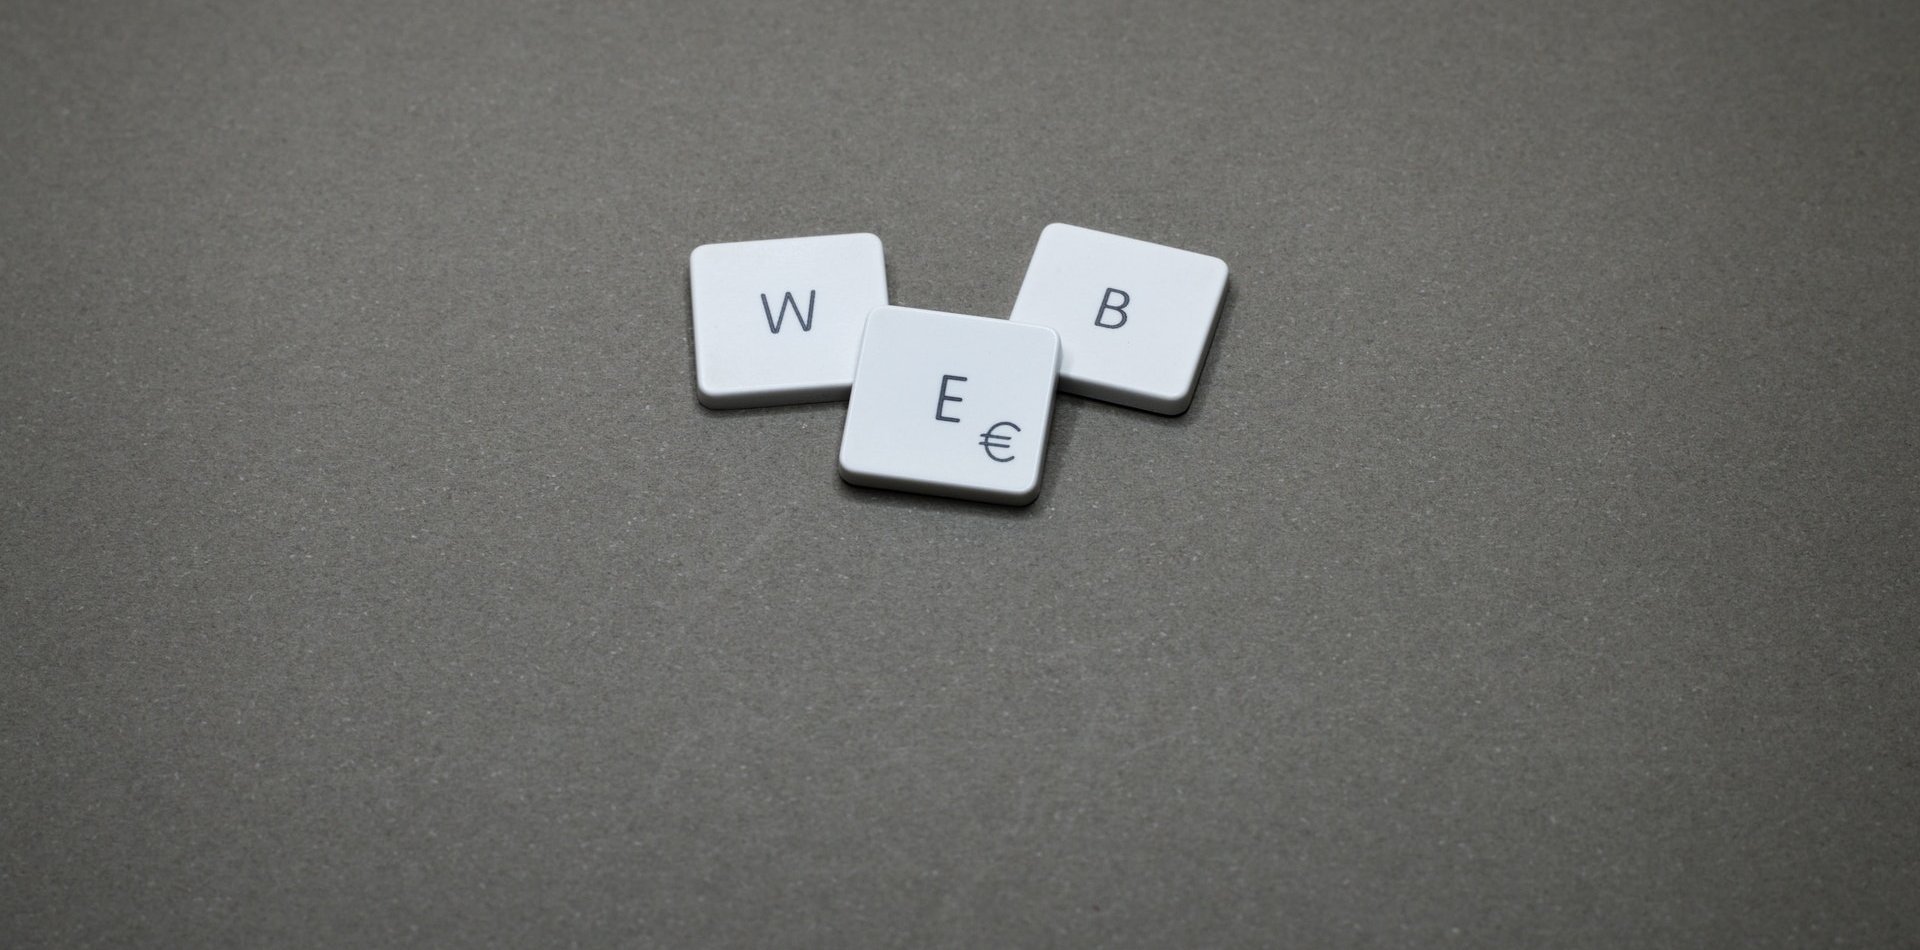 Letras que forman la palabra web 